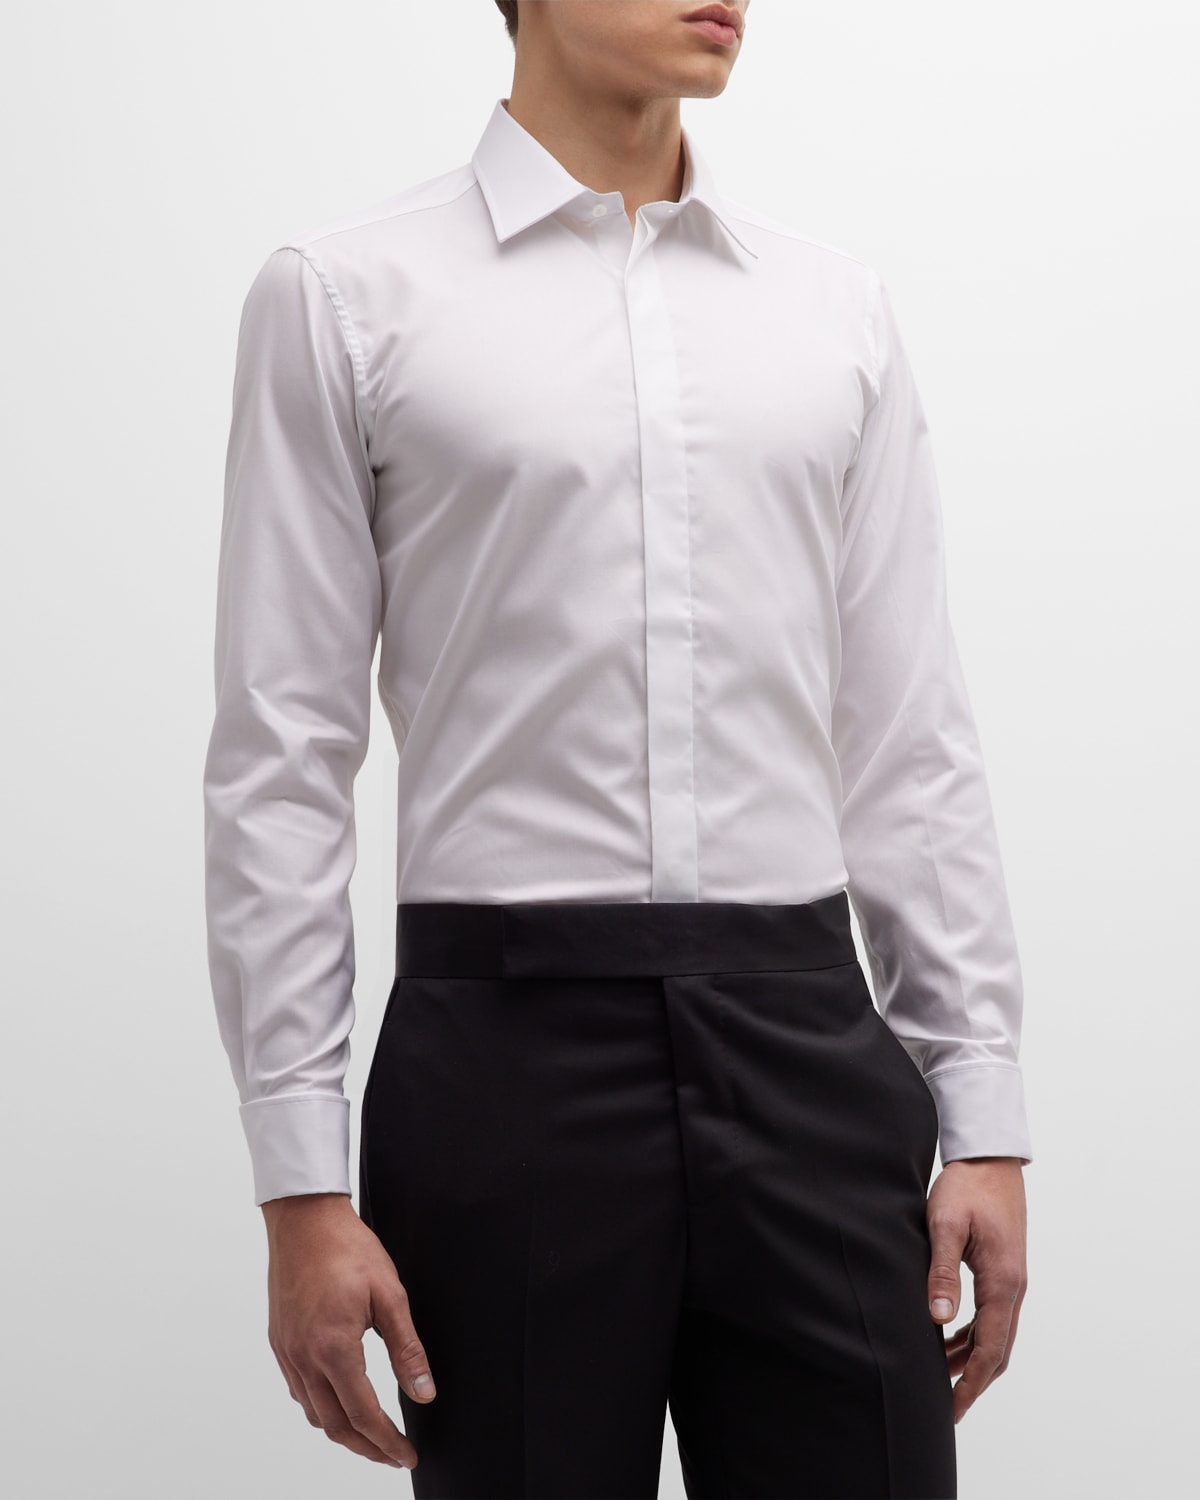 Charvet Men's Slim Fit Covered Placket Dress Shirt In White